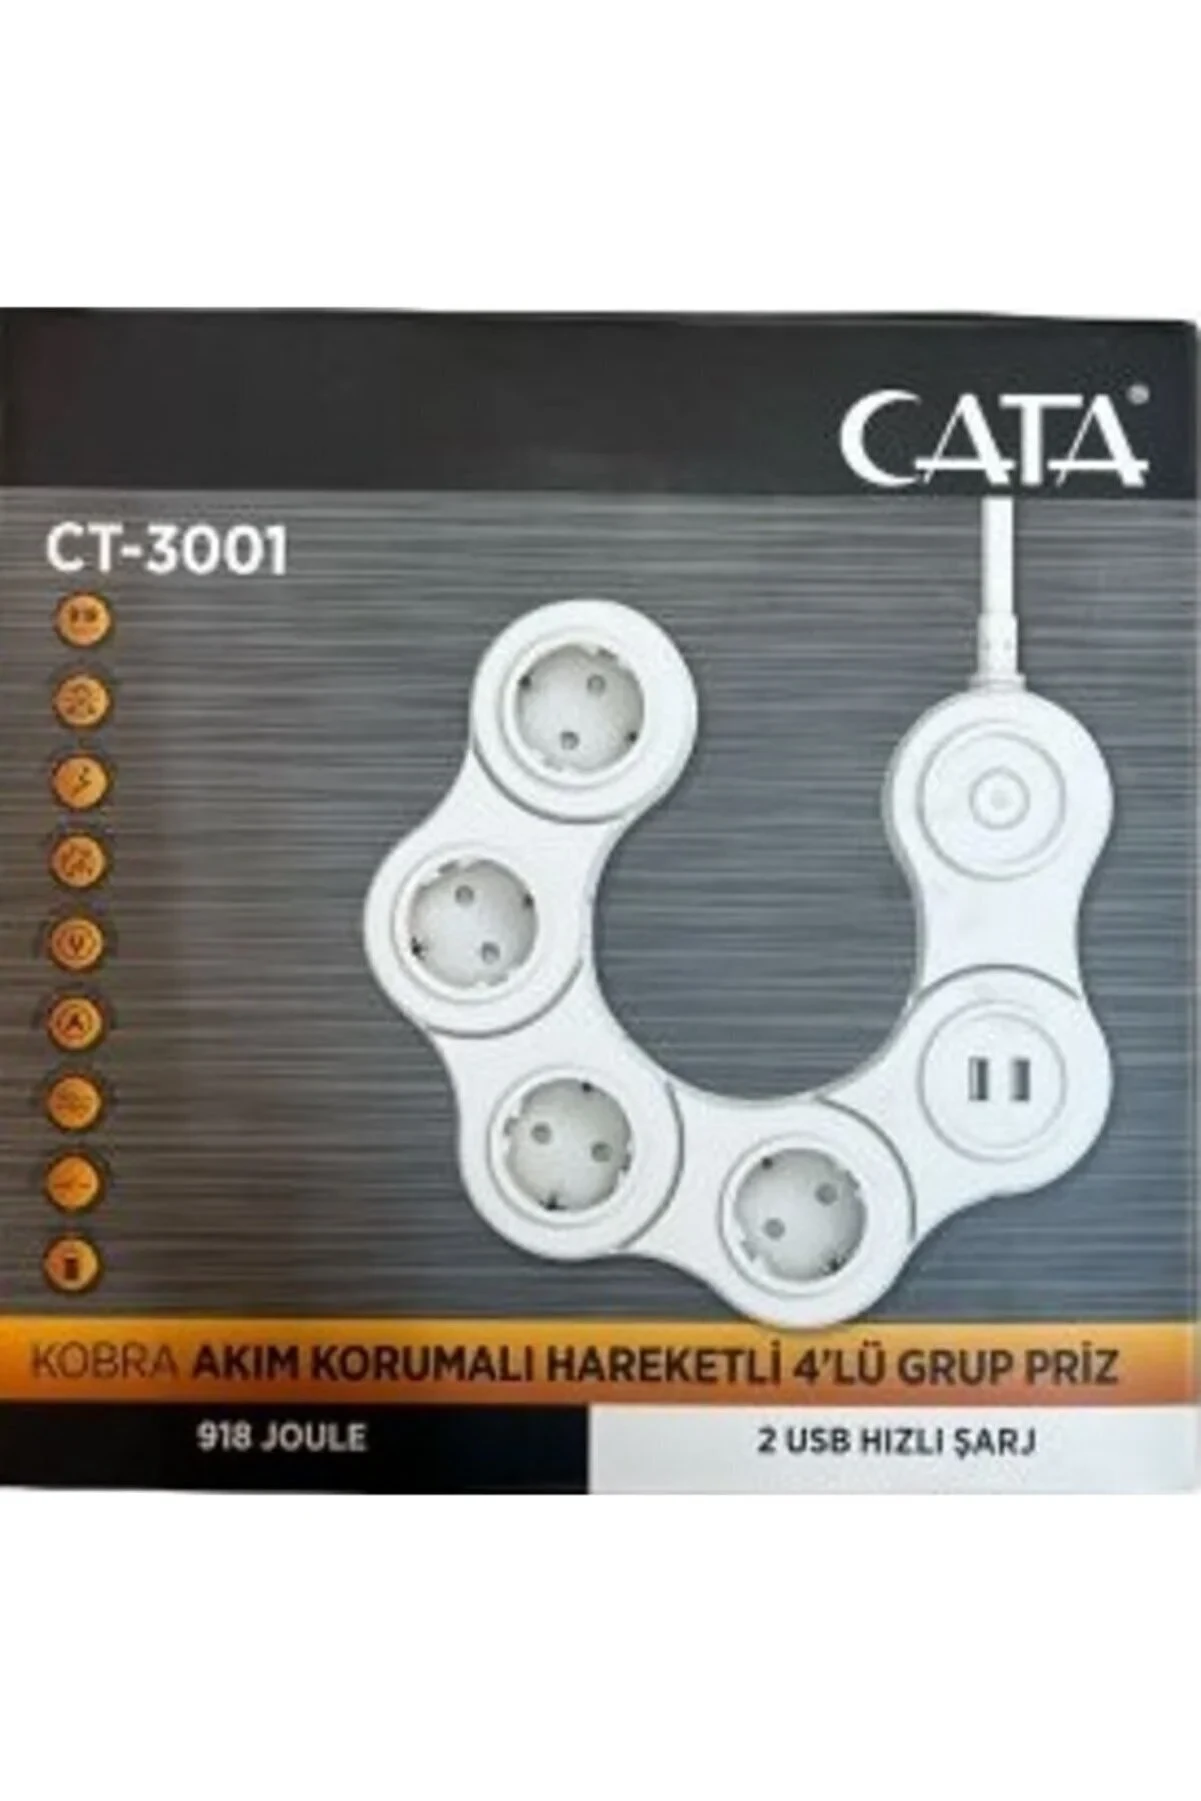 Cata CT-3001 Kobra Akım Korumalı 4'lü Grup Priz - 2